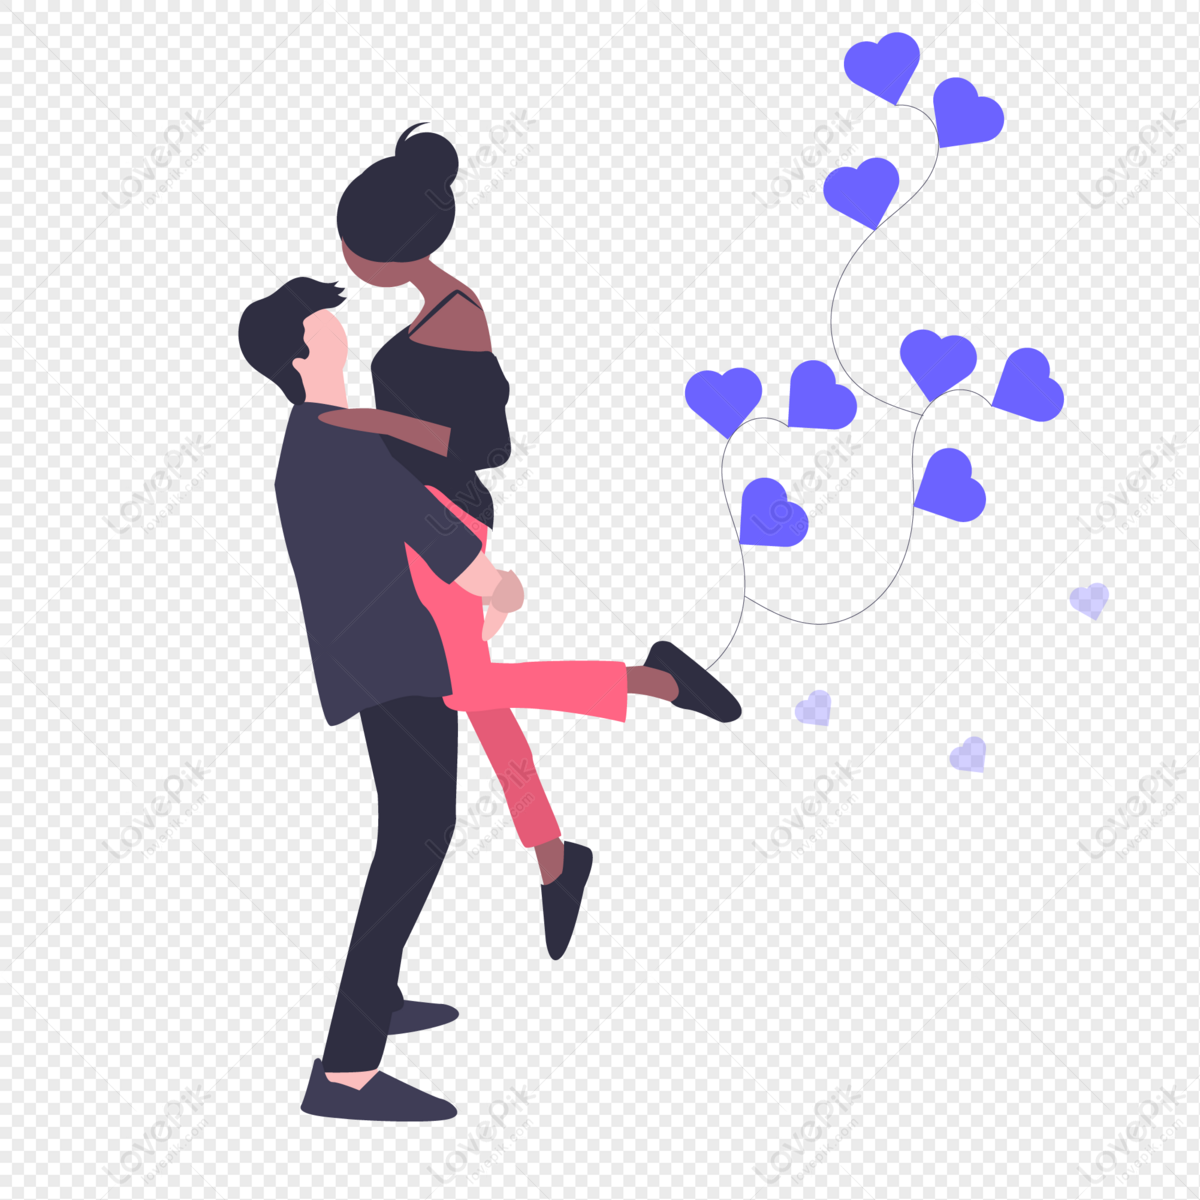 Bạn muốn tìm hình ảnh của cặp đôi ôm nhau để thể hiện tình cảm của mình? Hãy tham khảo ngay những hình ảnh cặp đôi ôm nhau PNG. Hình ảnh với độ phân giải cao và chất lượng tốt sẽ giúp bạn dễ dàng lựa chọn cho mình những bức ảnh ưng ý nhất.